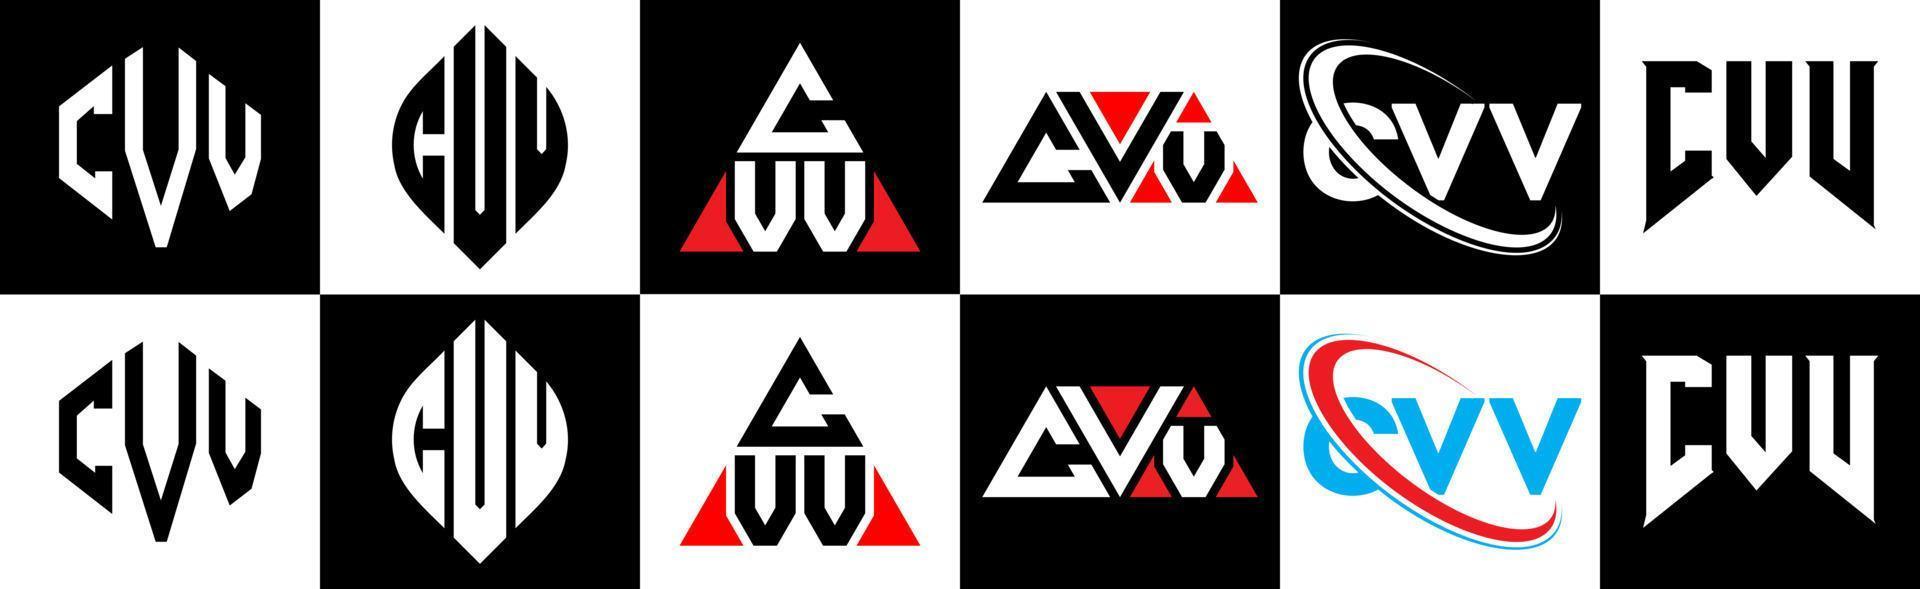 création de logo de lettre cvv en six styles. cvv polygone, cercle, triangle, hexagone, style plat et simple avec logo de lettre de variation de couleur noir et blanc dans un plan de travail. cvv logo minimaliste et classique vecteur